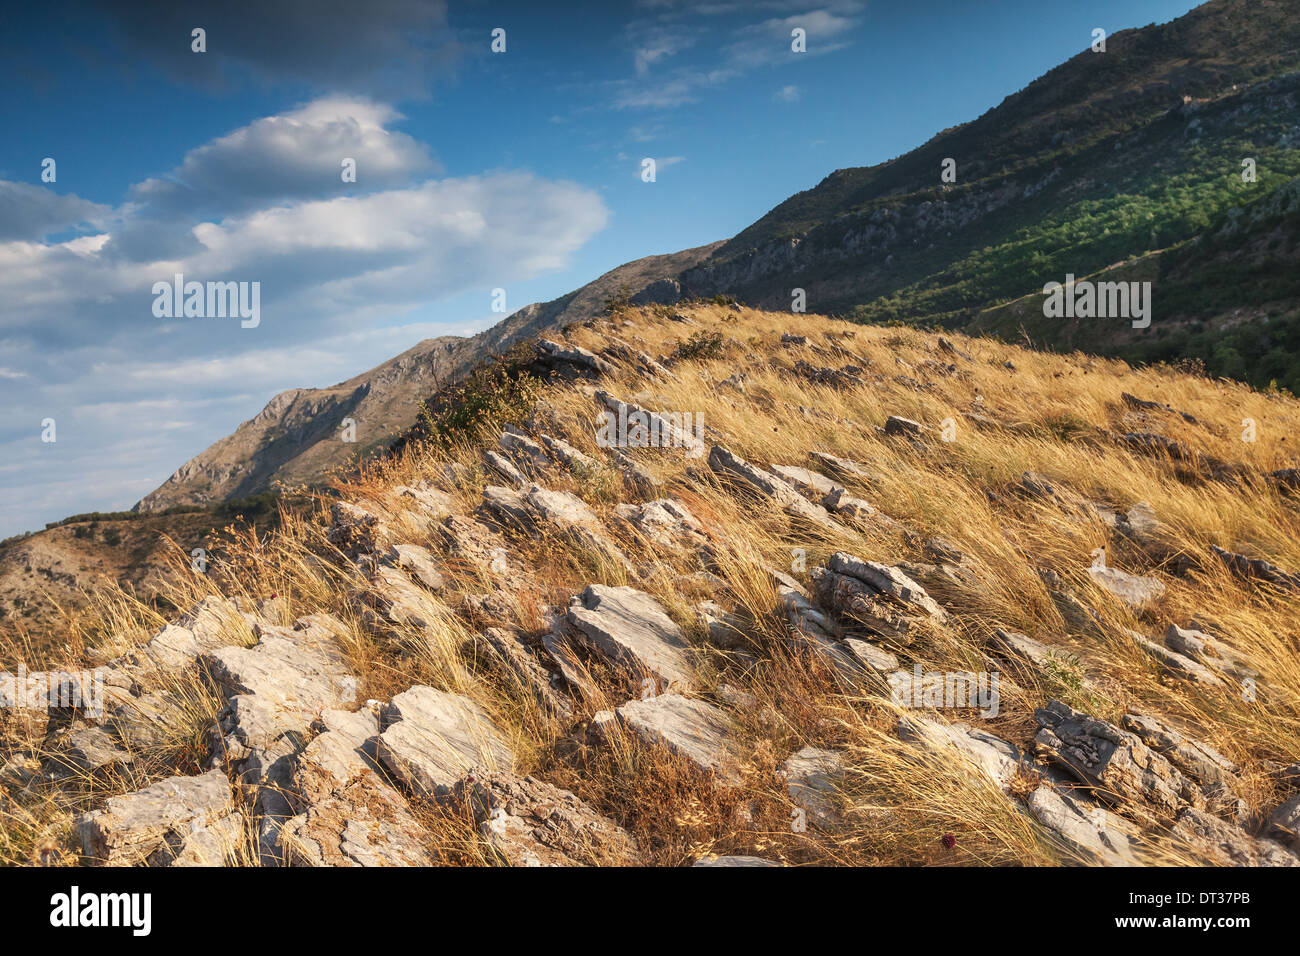 Le Monténégro. Paysage de montagne avec de l'herbe pousse sur les roches jaunes Banque D'Images